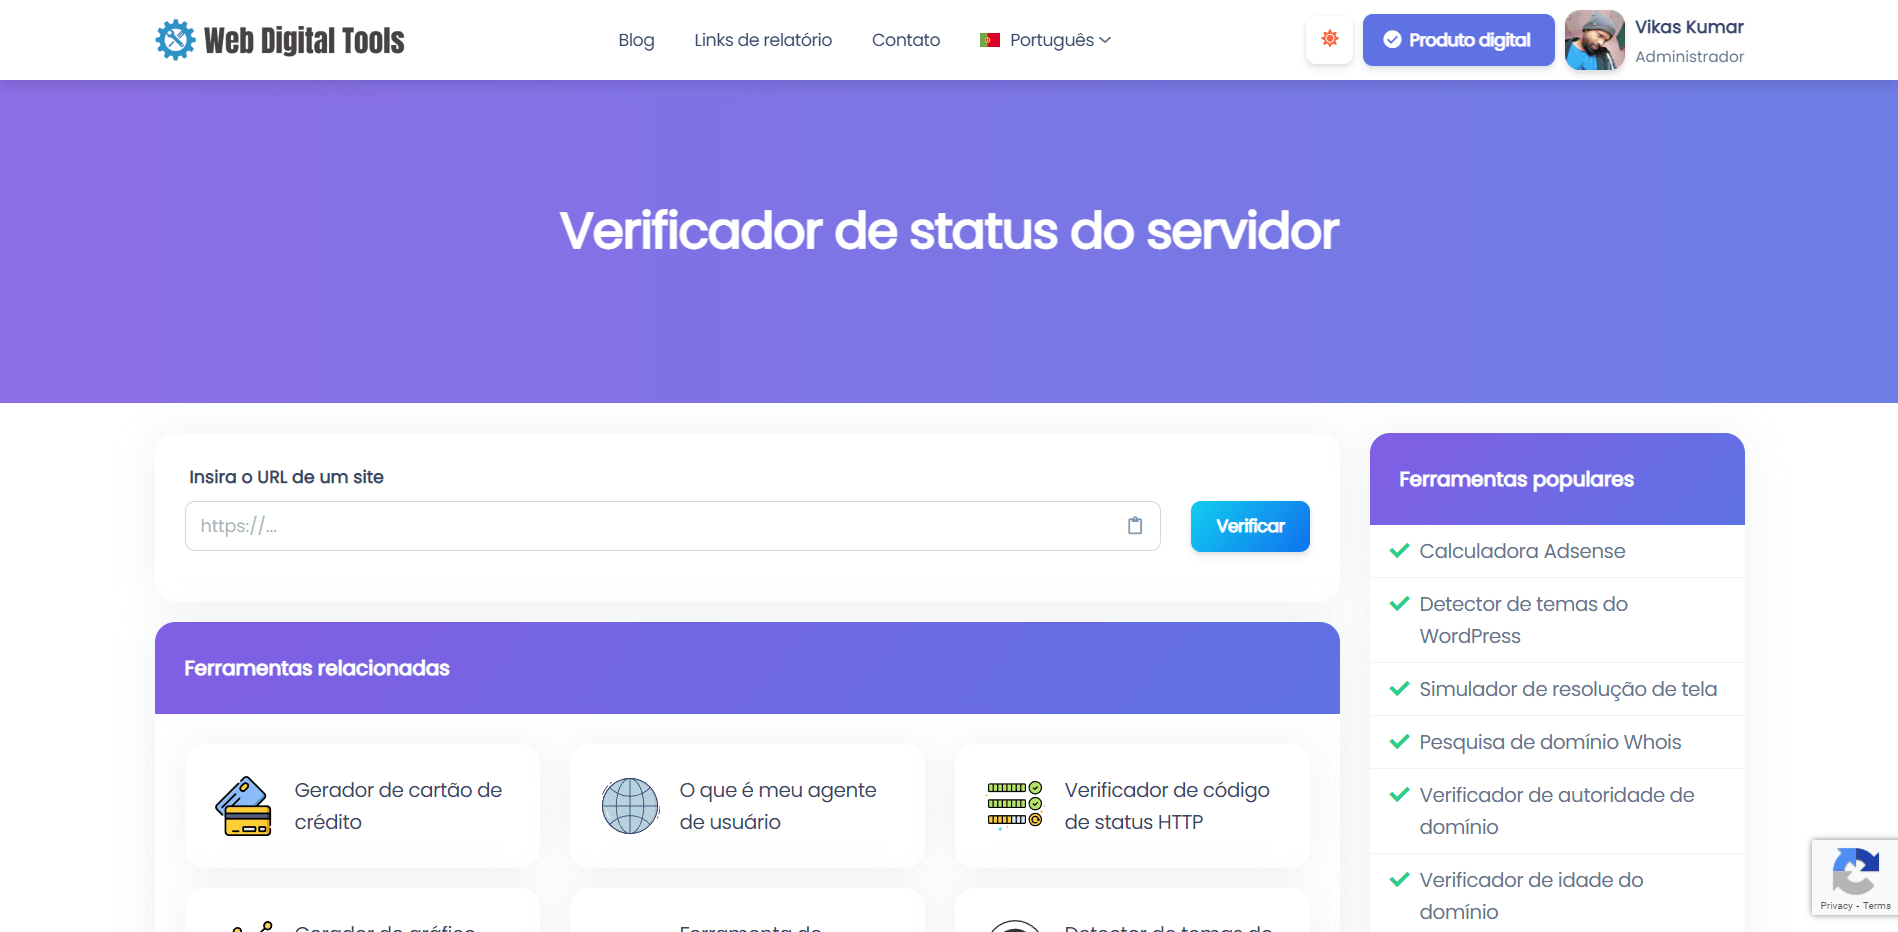 Verificador de status do servidor